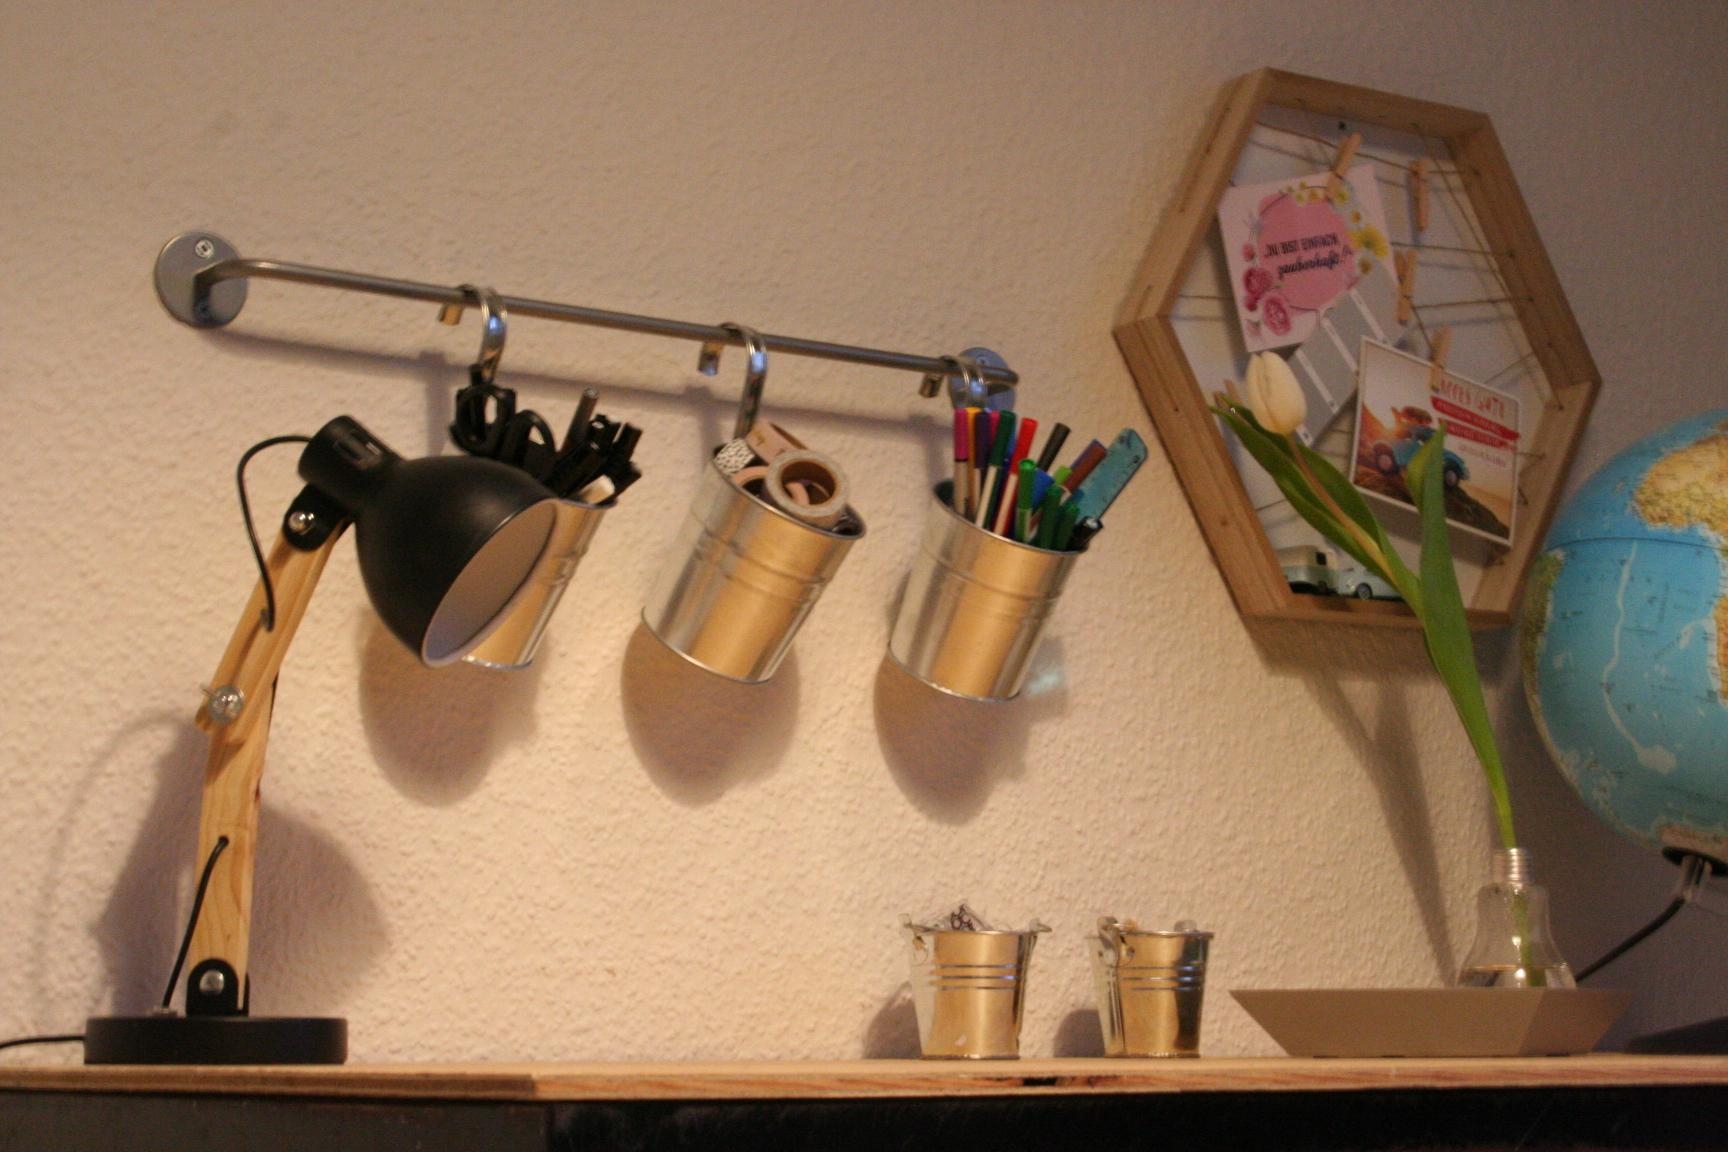 Mein Work- und creativityspace mit #ikeahack (Handtuchhalter als Wandhalterung für Utensilien) #diyweek #workspace #diy